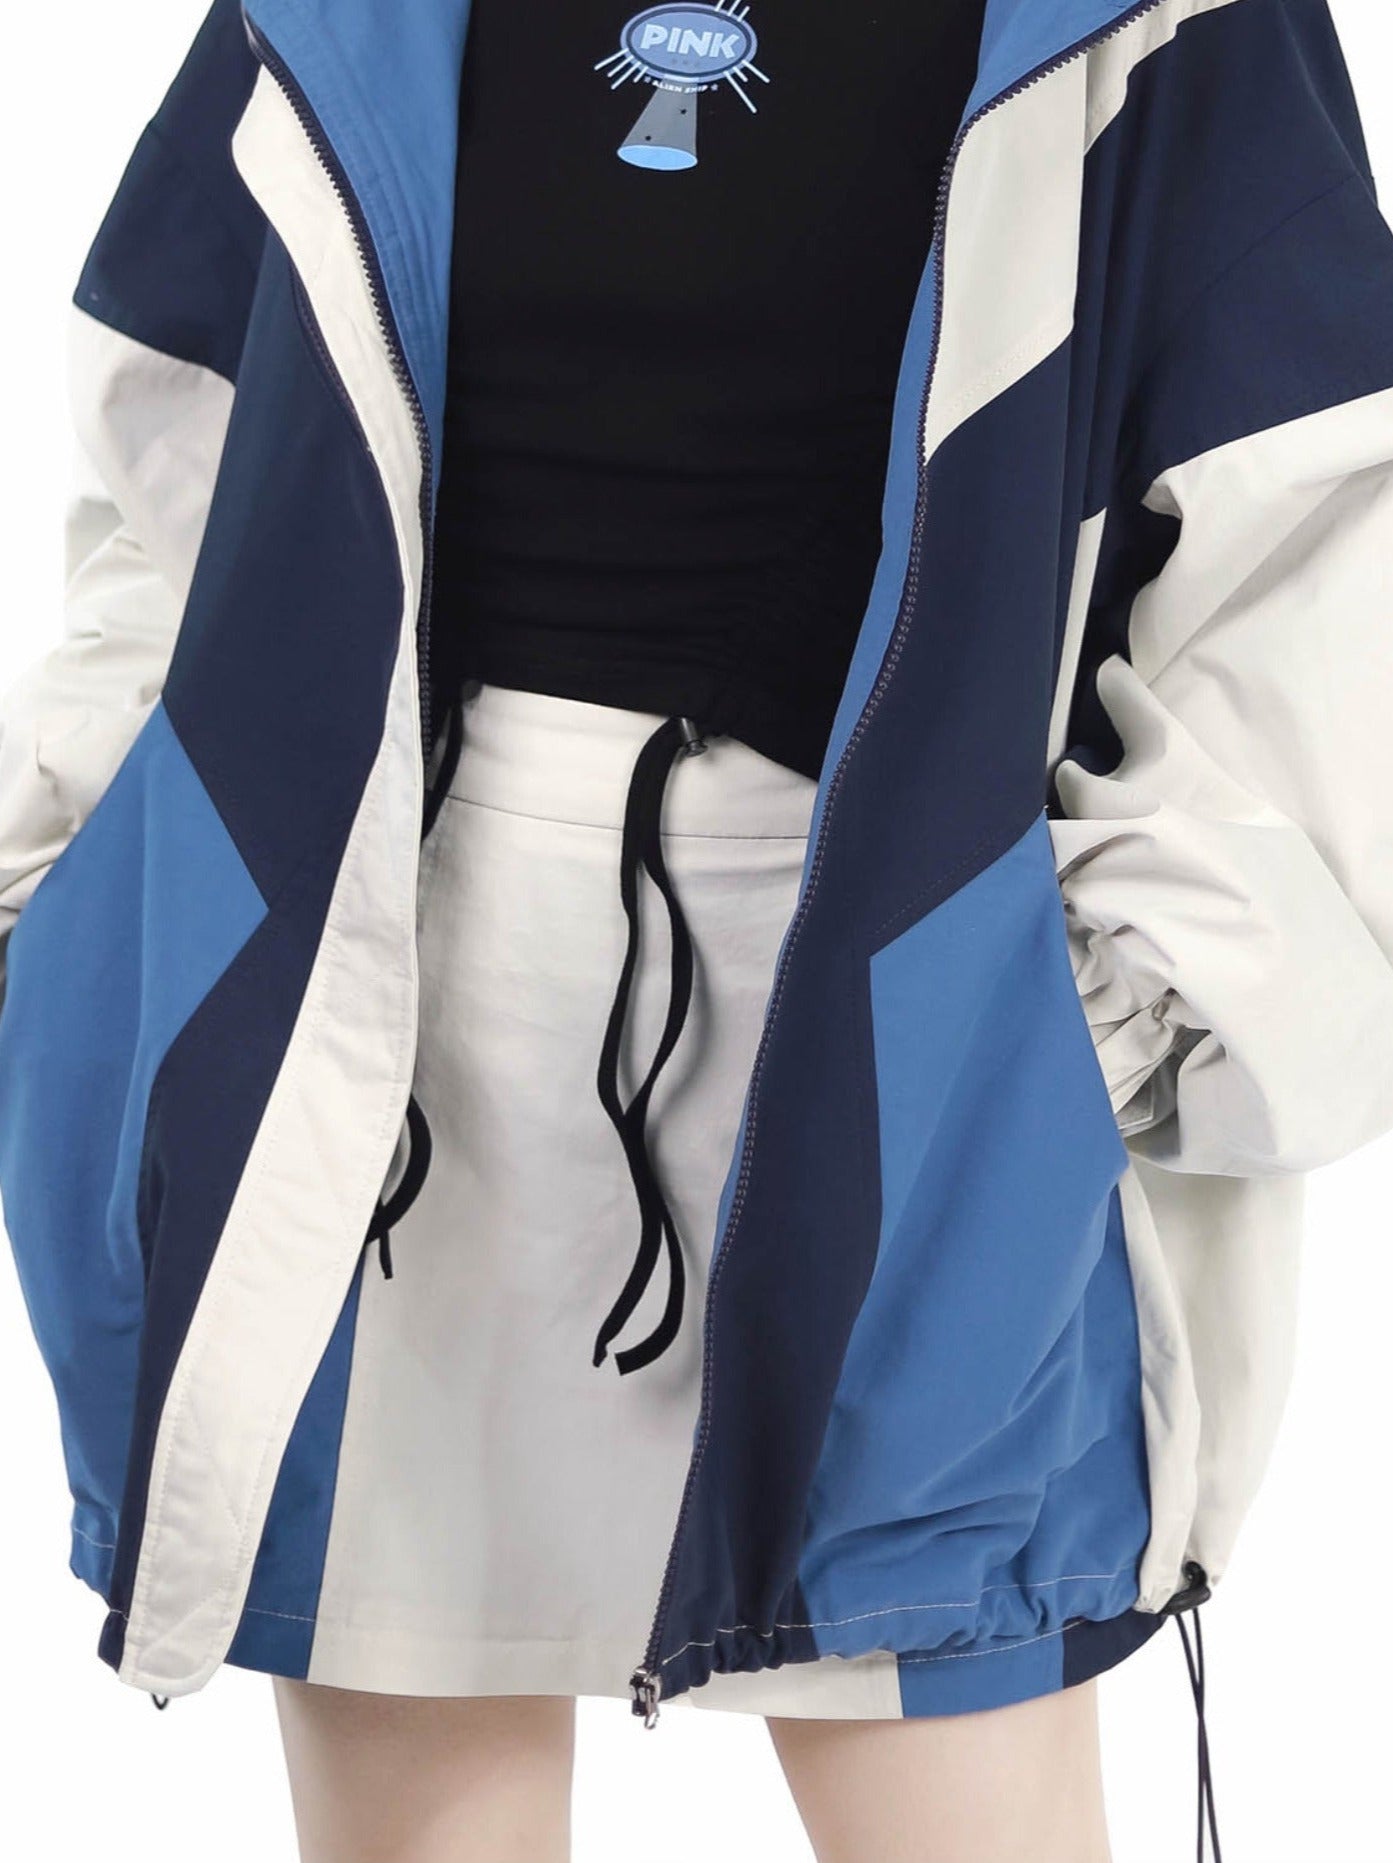 Blue Jacket Polar Fleece Mechanical Future Design Casual Suit